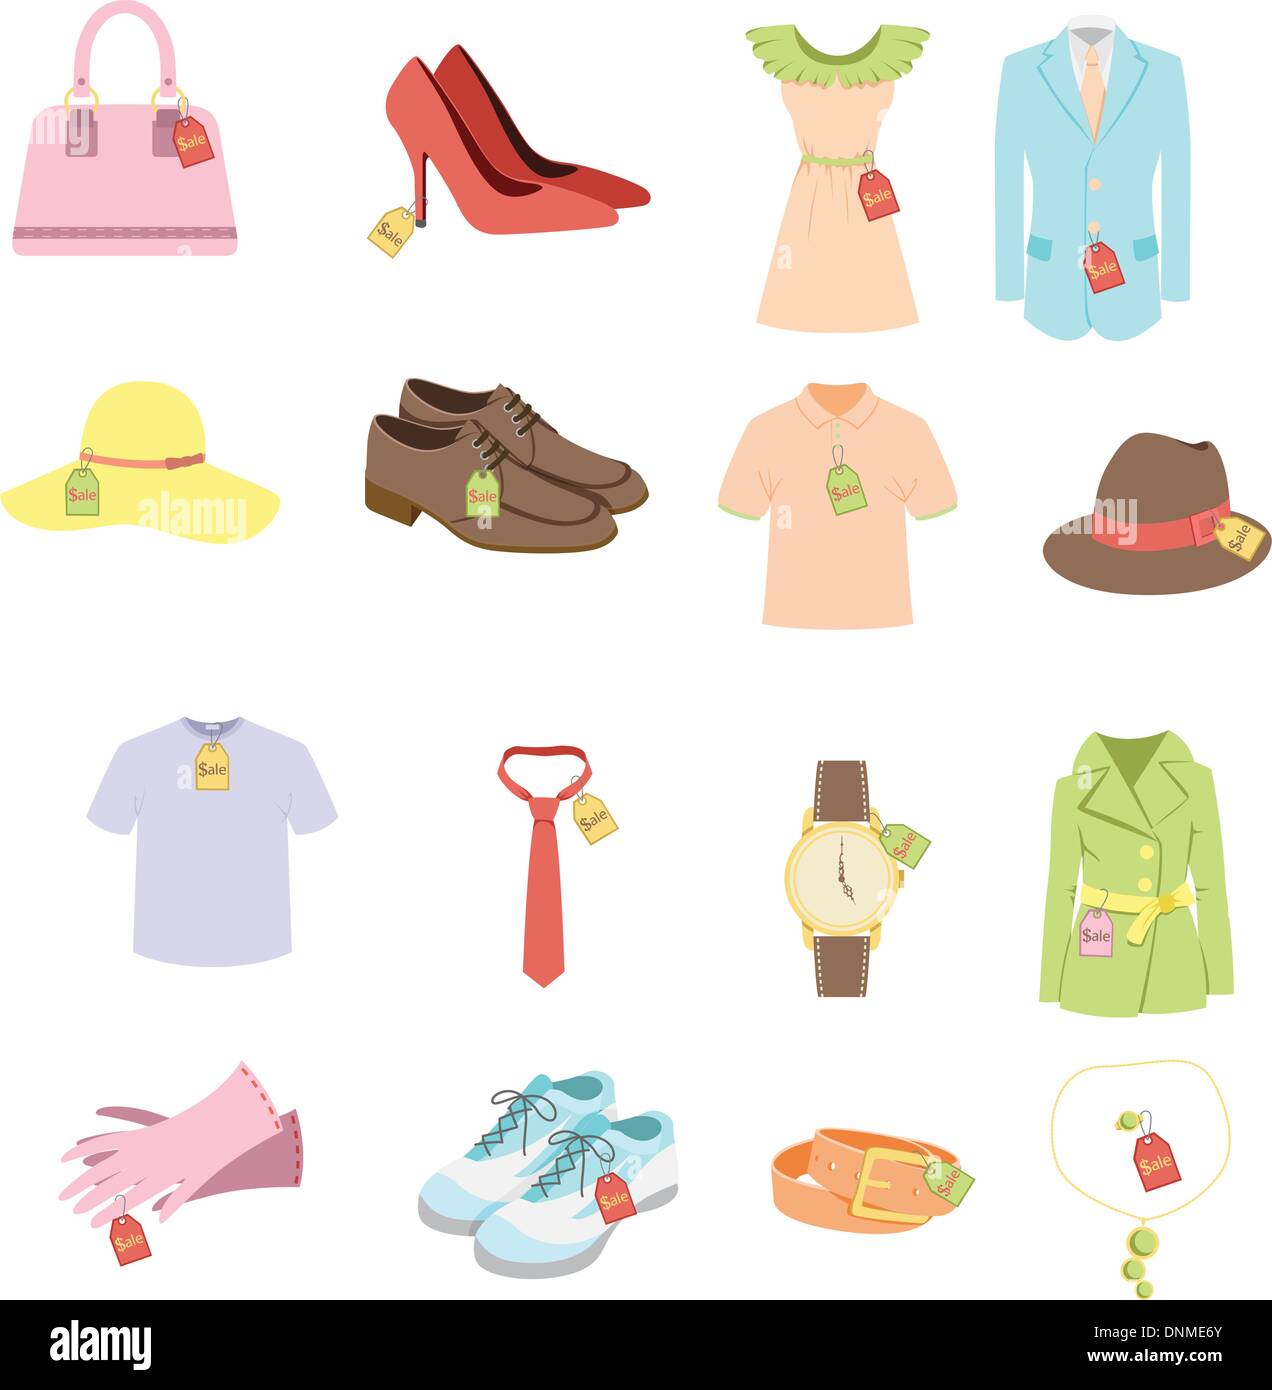 Una illustrazione vettoriale di diversi capi di vestiario prodotto con i tag di vendita Illustrazione Vettoriale